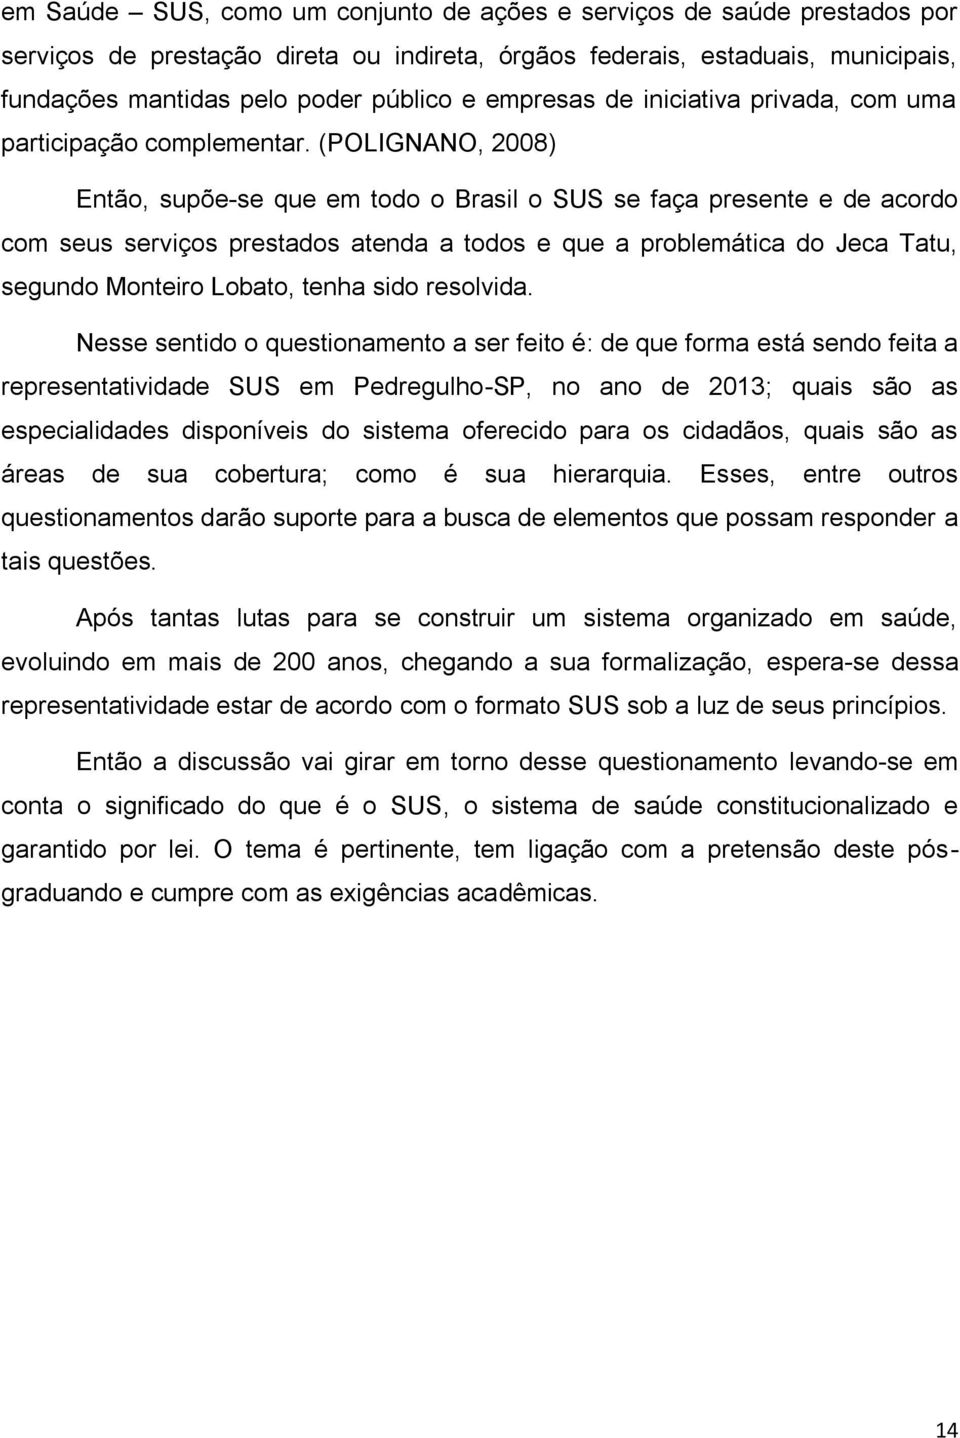 (POLIGNANO, 2008) Então, supõe-se que em todo o Brasil o SUS se faça presente e de acordo com seus serviços prestados atenda a todos e que a problemática do Jeca Tatu, segundo Monteiro Lobato, tenha